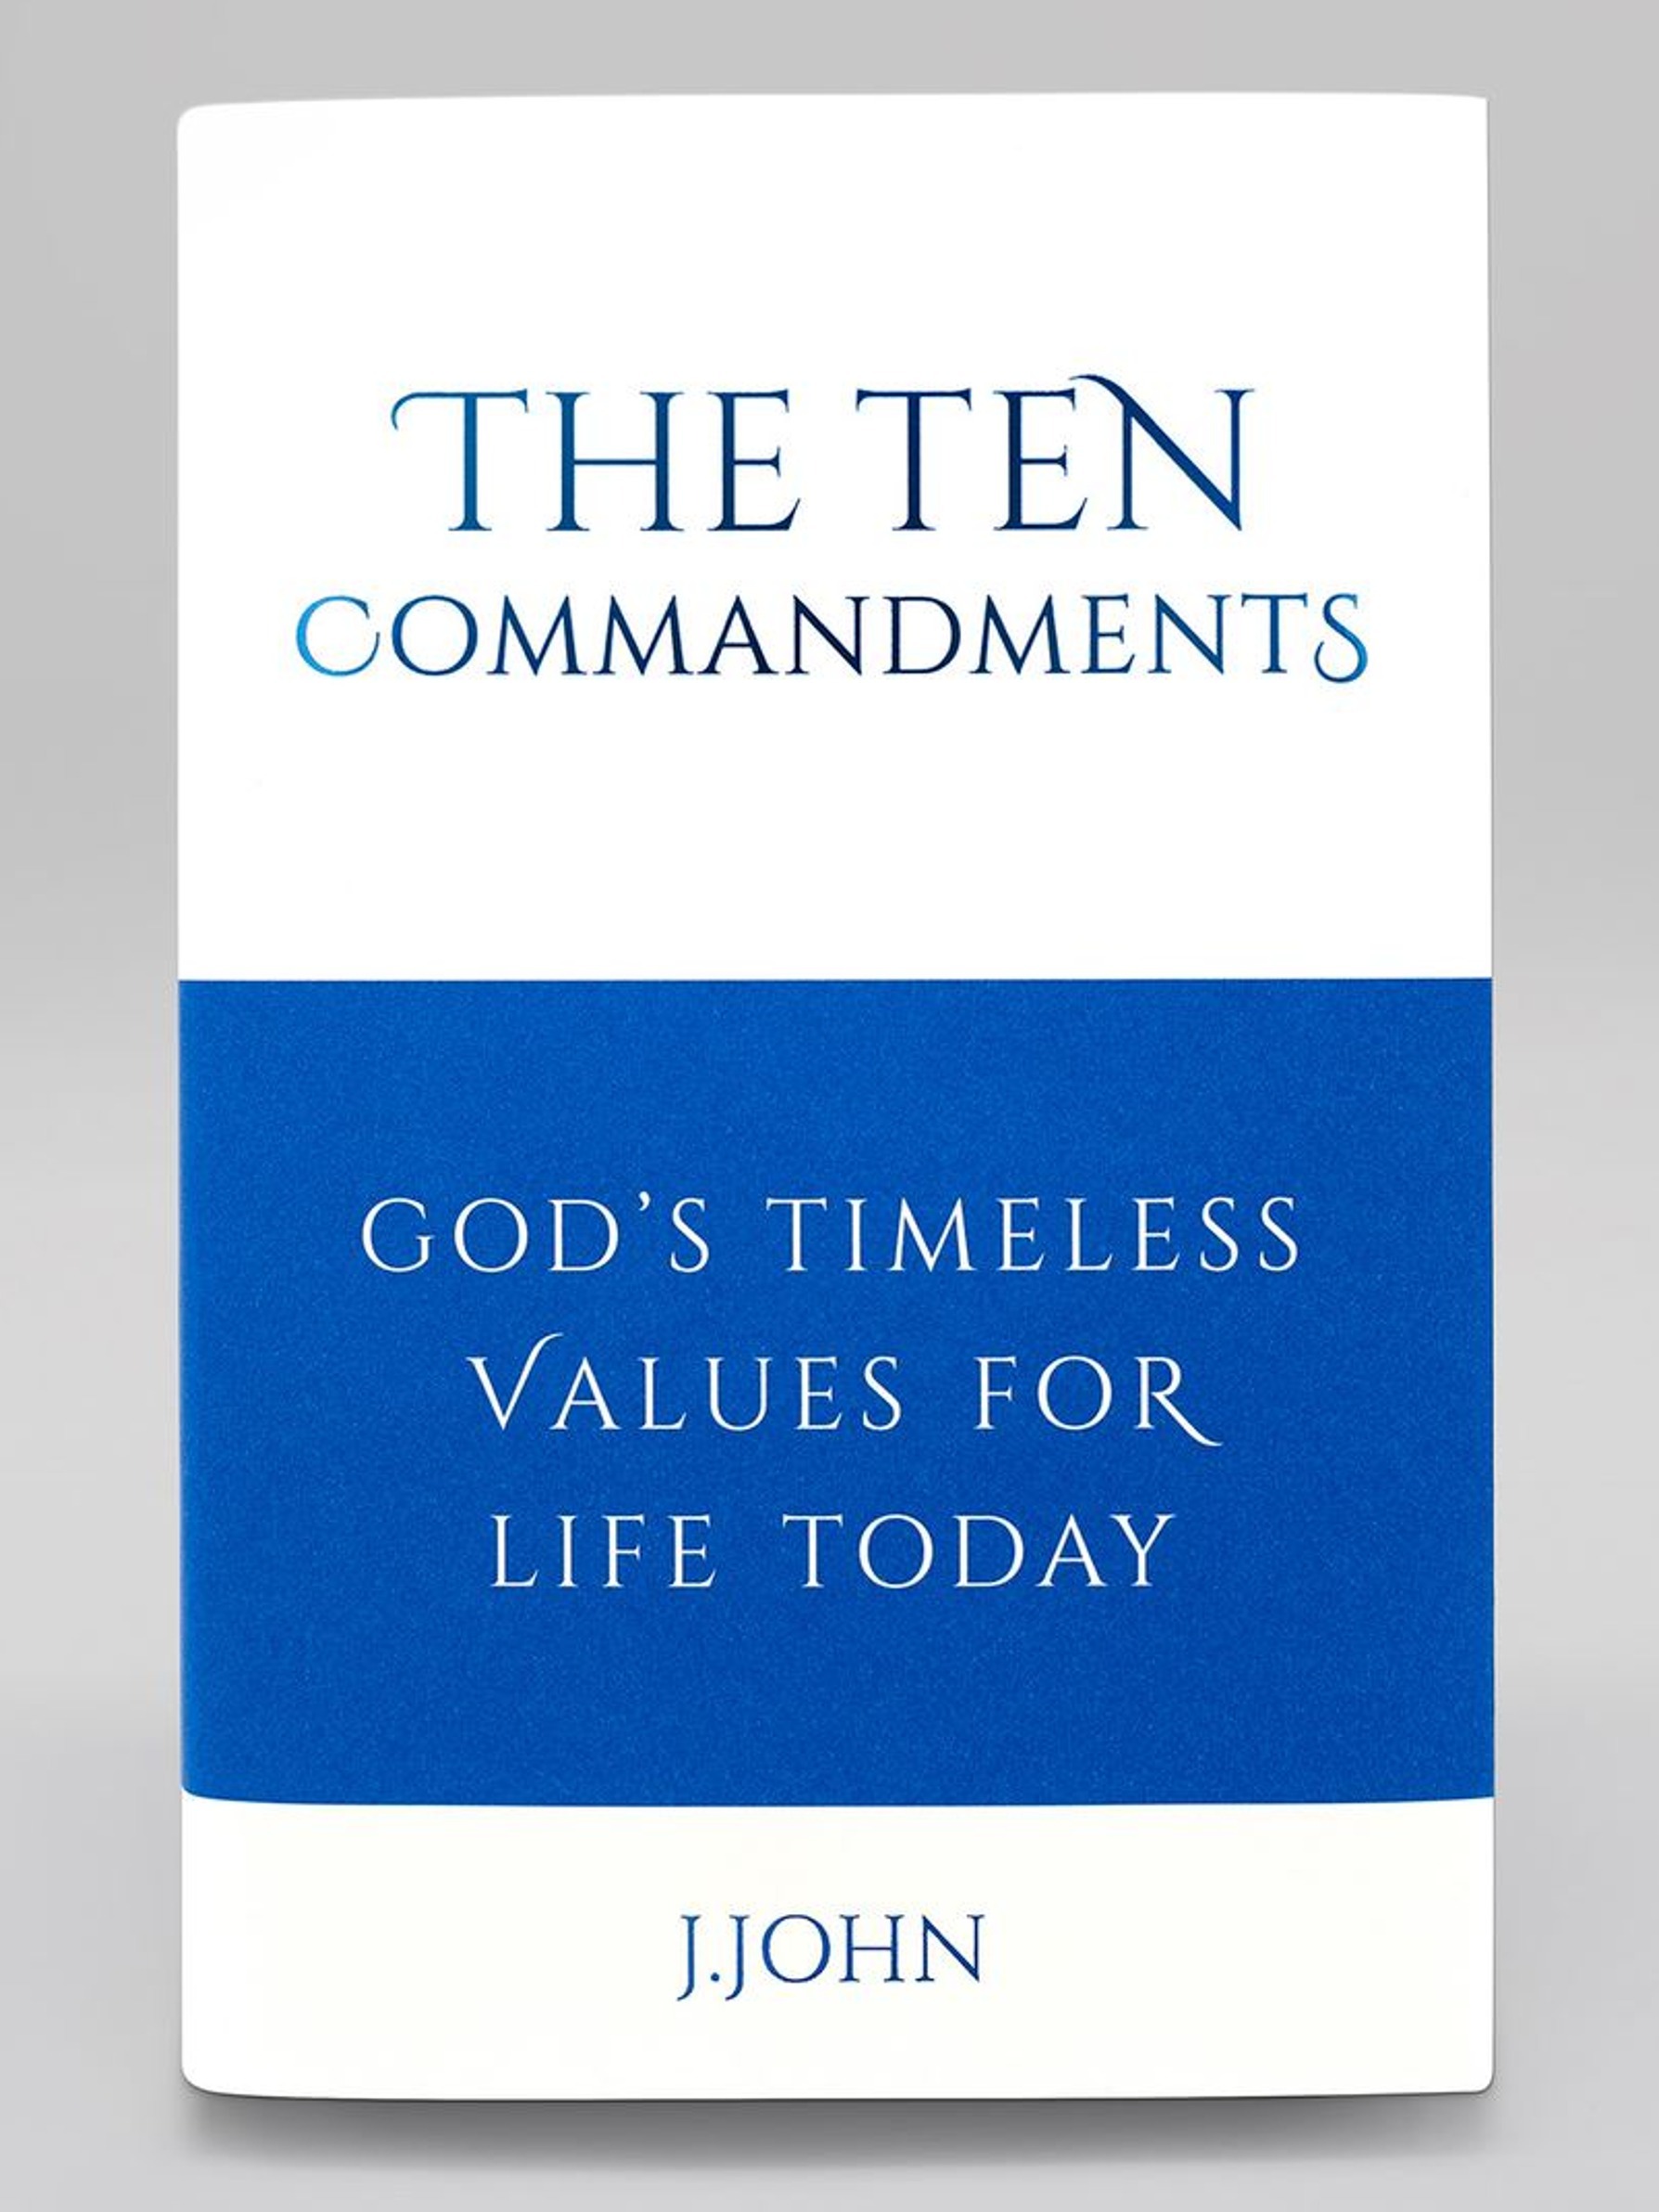 The Ten Commandments book